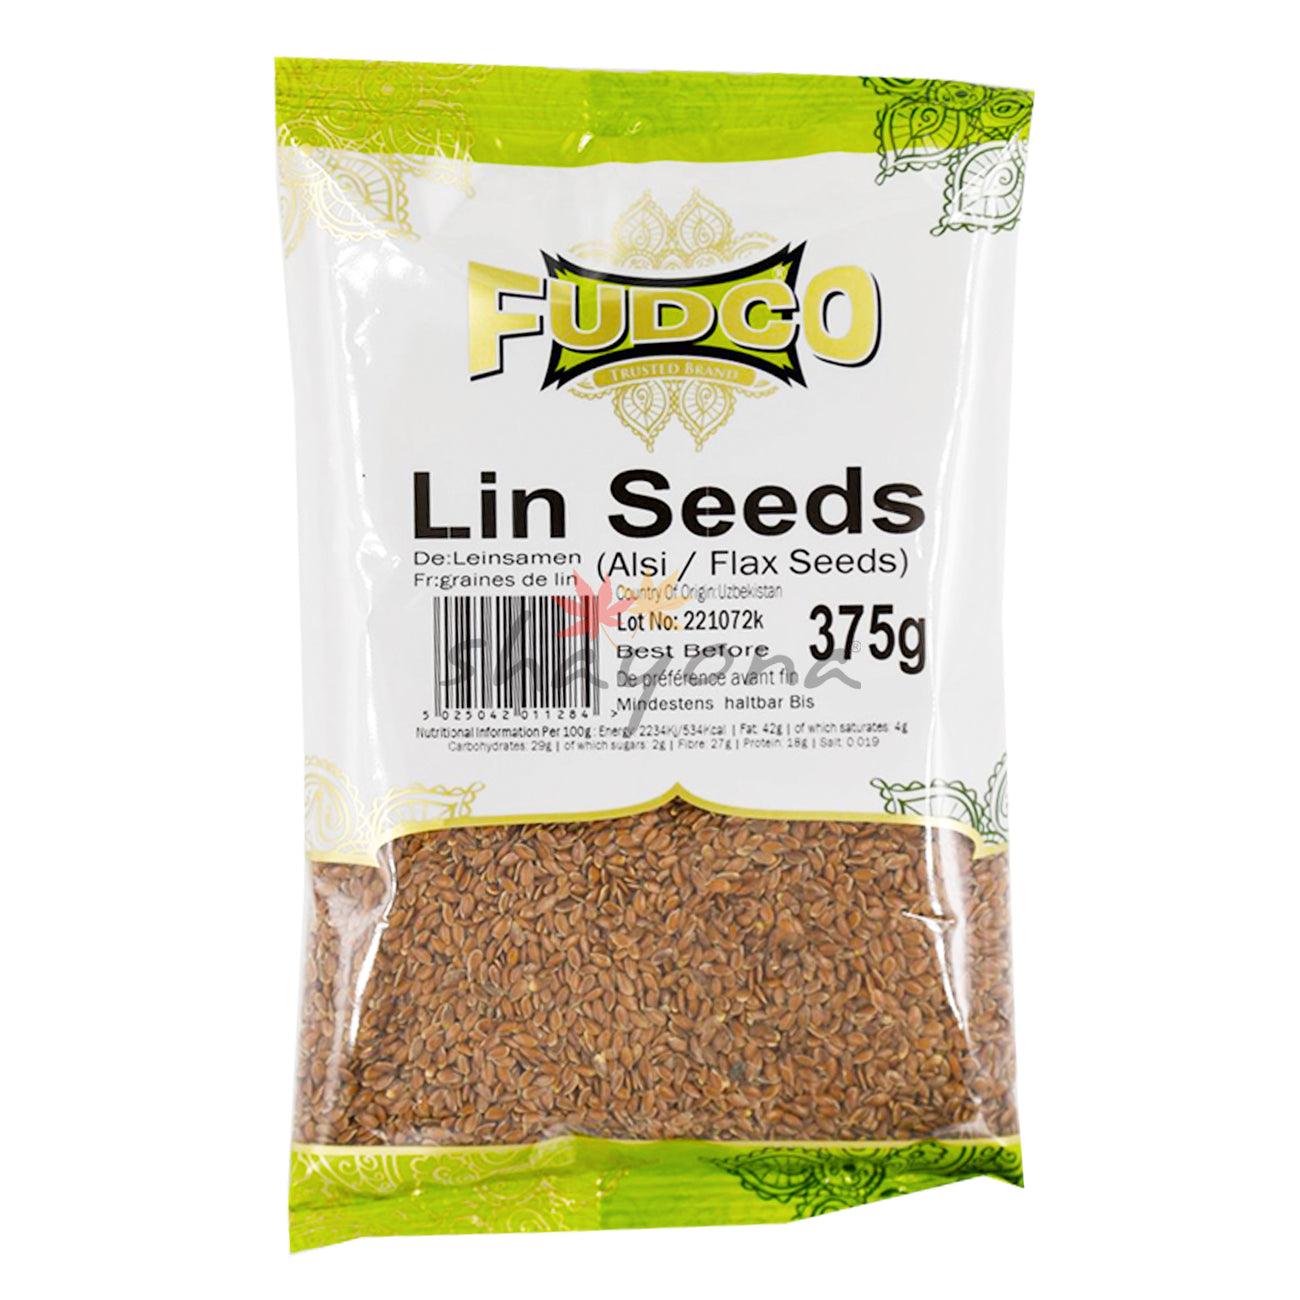 Fudco Lin Seeds - Shayona UK